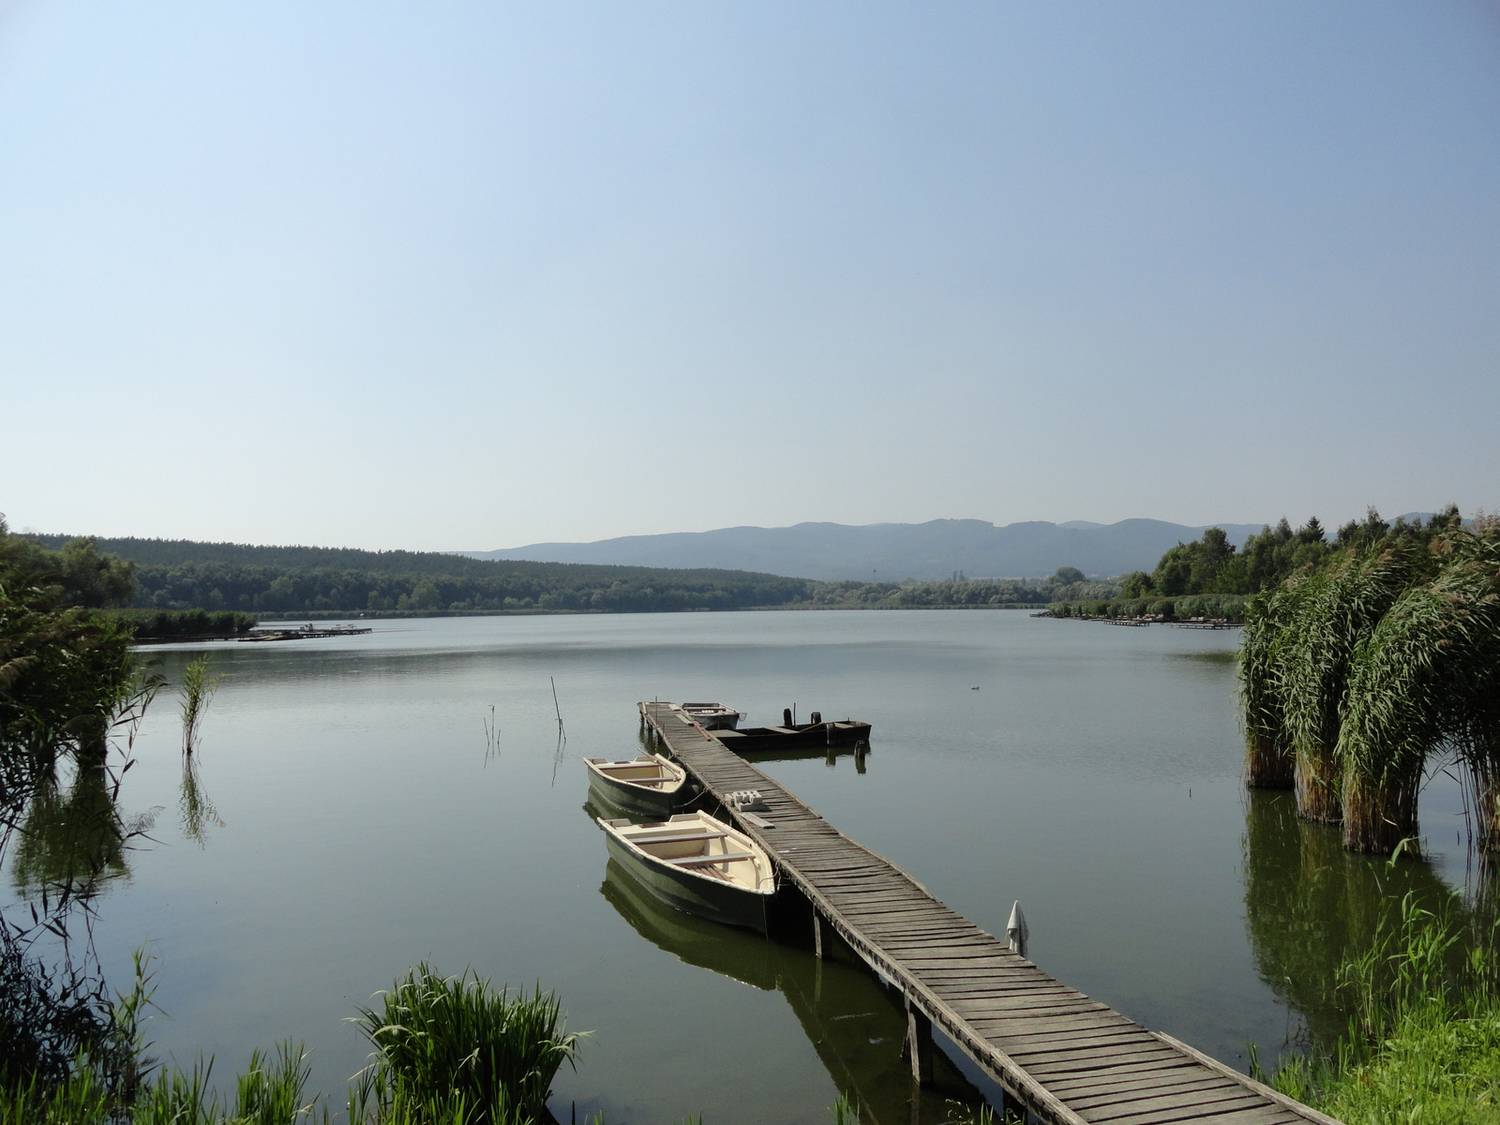 A falutól délkeletre található a festői szépségű Jenői-tó, melyet az azonos nevű patak felduzzasztásával hoztak létre. Ideális hely egy láblógatós piknikhez is.